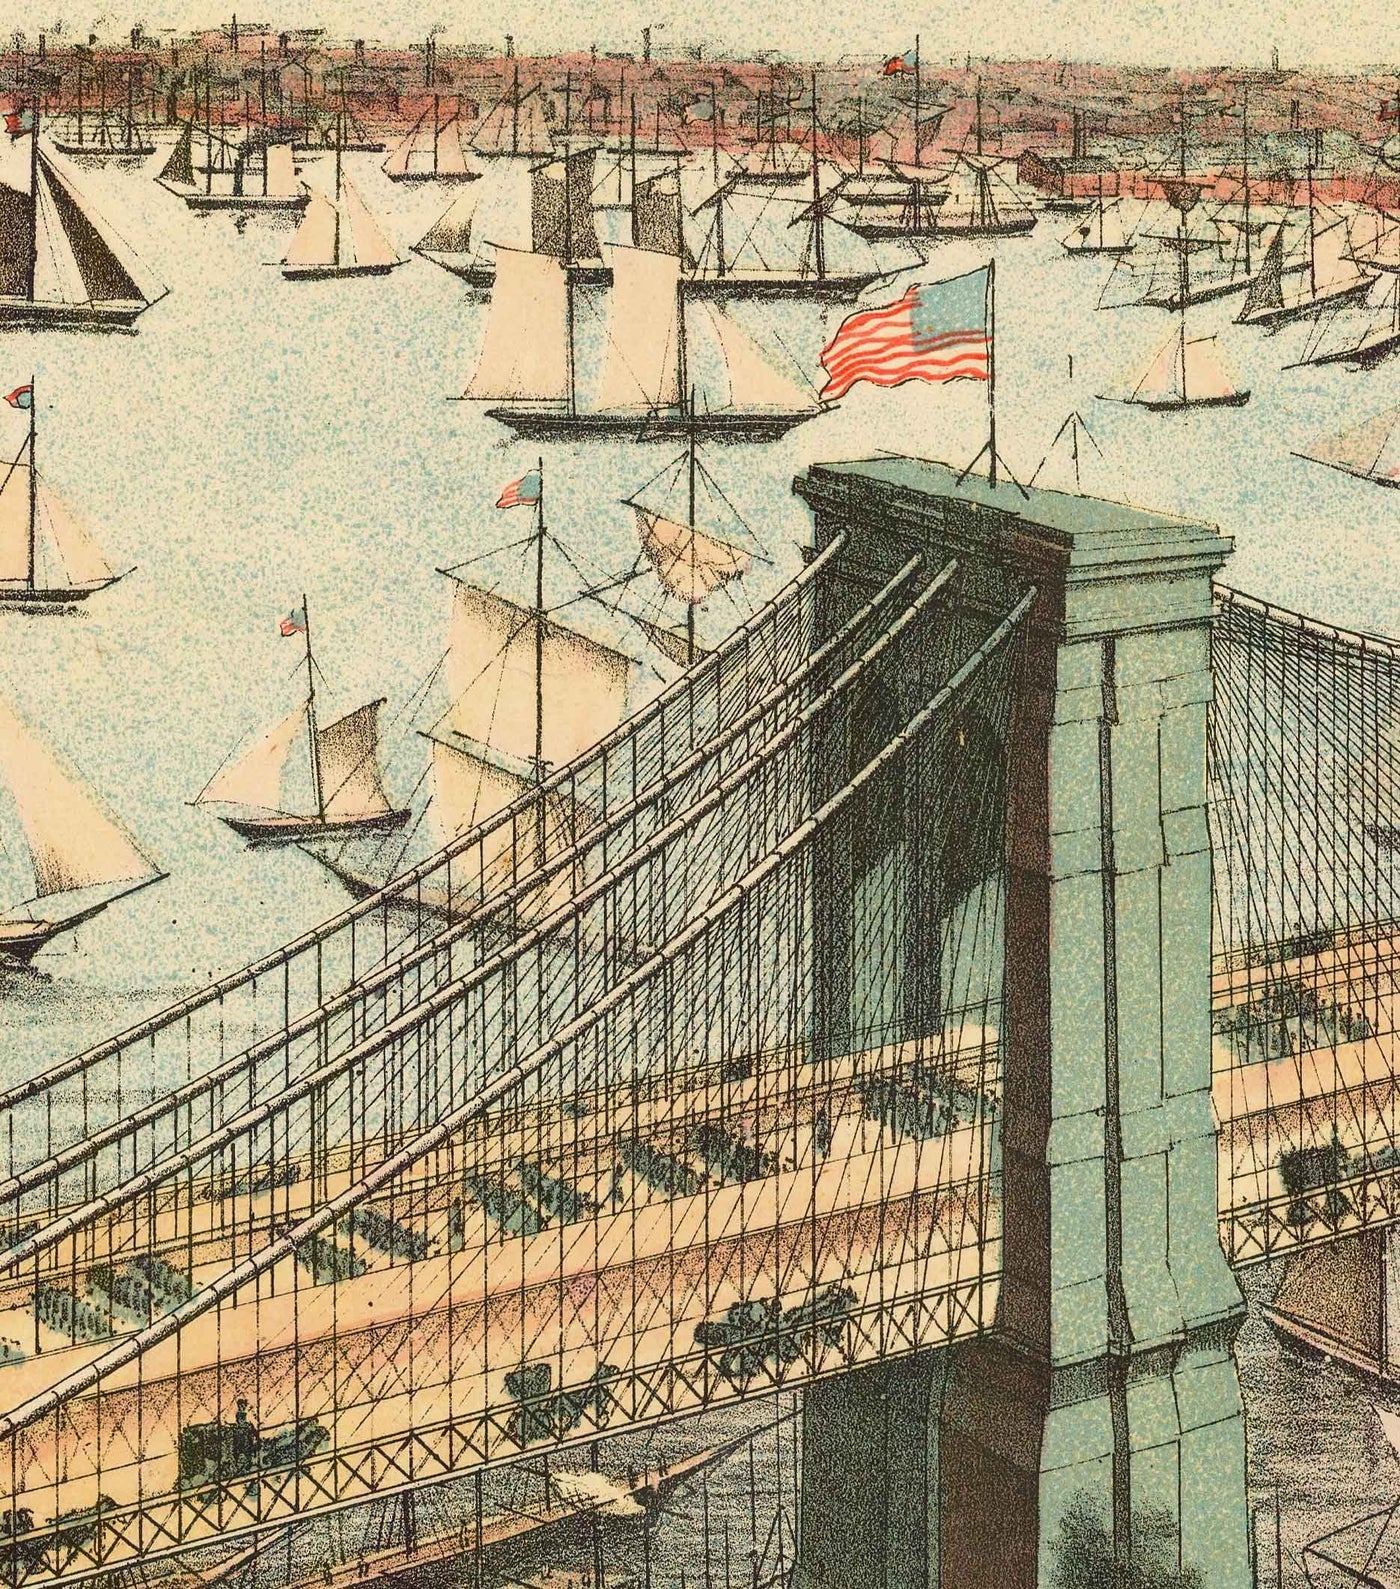 Alte Vogelperspektive der Brooklyn Bridge im Jahr 1883 - Große Hängebrücke, New York City, East River, Brooklyn Tower